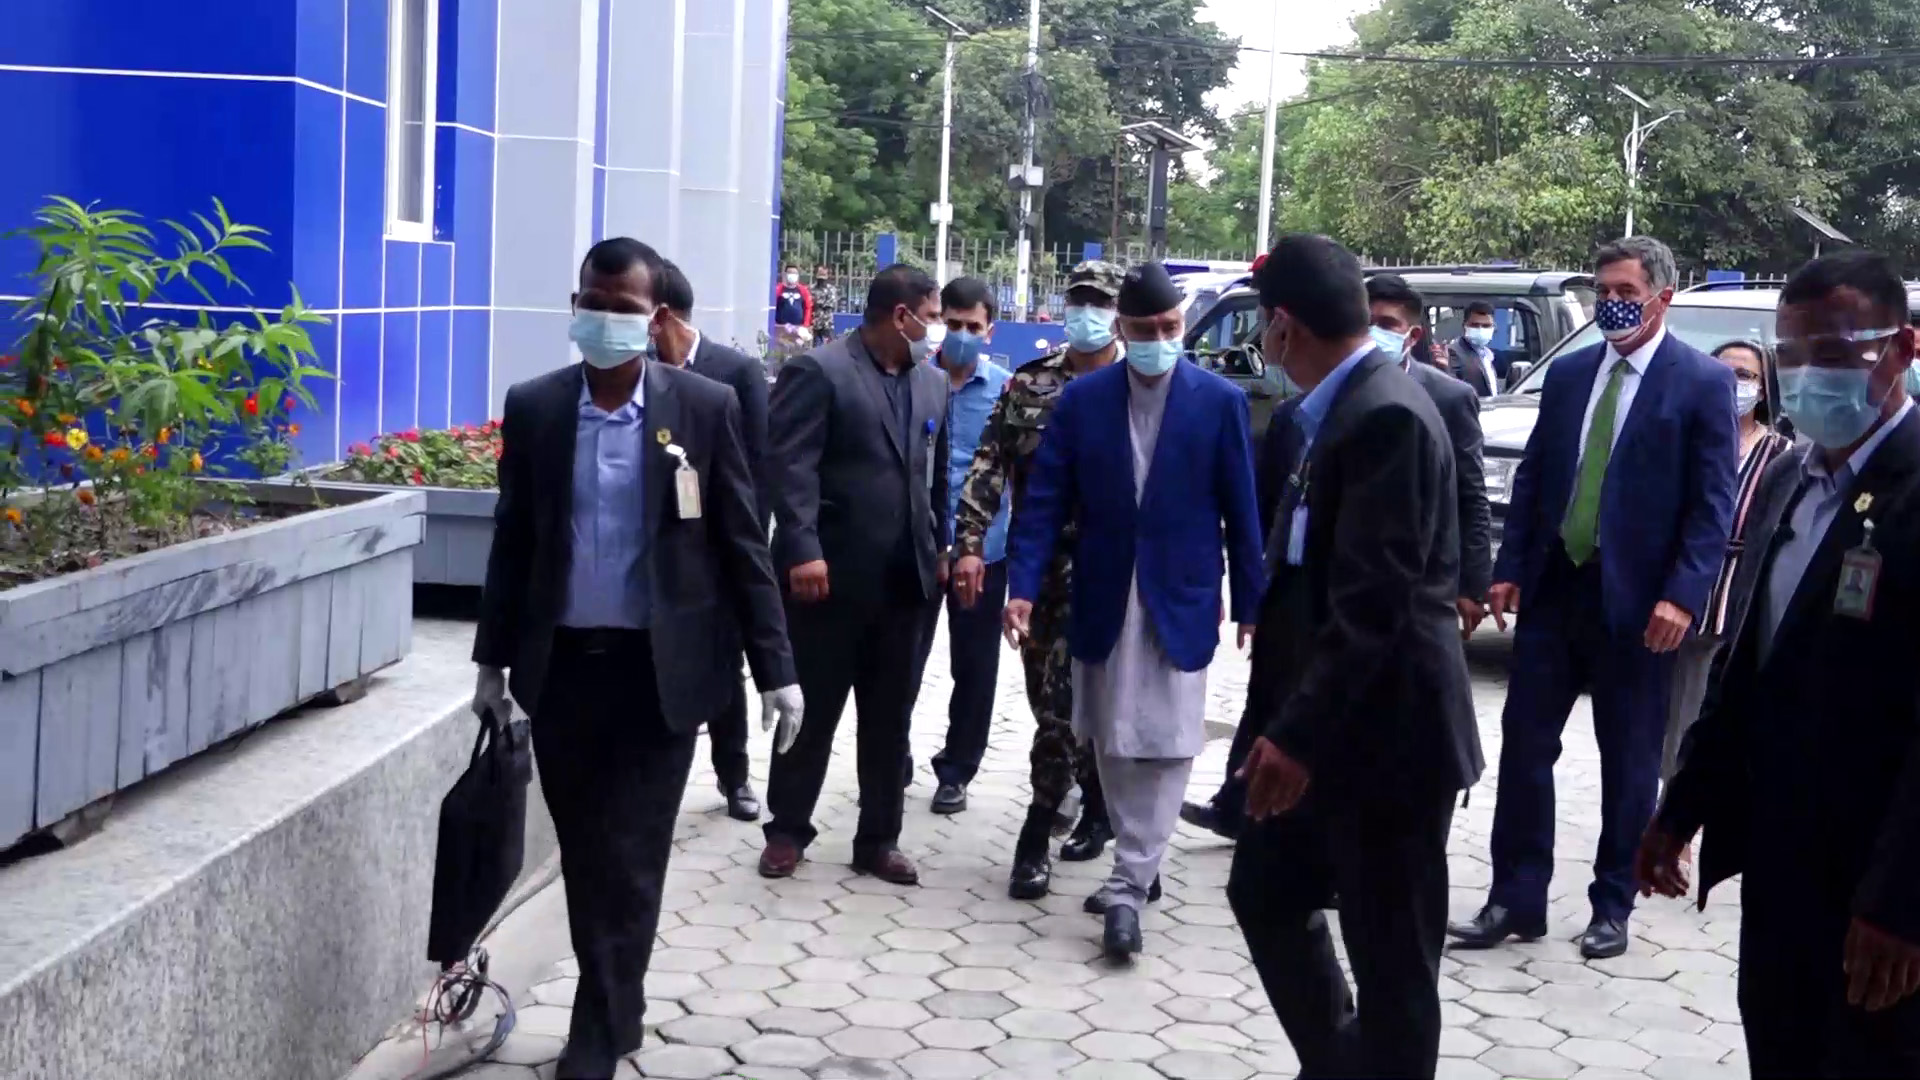 प्रधानमन्त्री देउवा २० सदस्यीय नेपाली प्रतिनिधि मण्डलको नेतृत्व गर्दै बेलायत जाँने, यस्तो छ भ्रमण तालिका